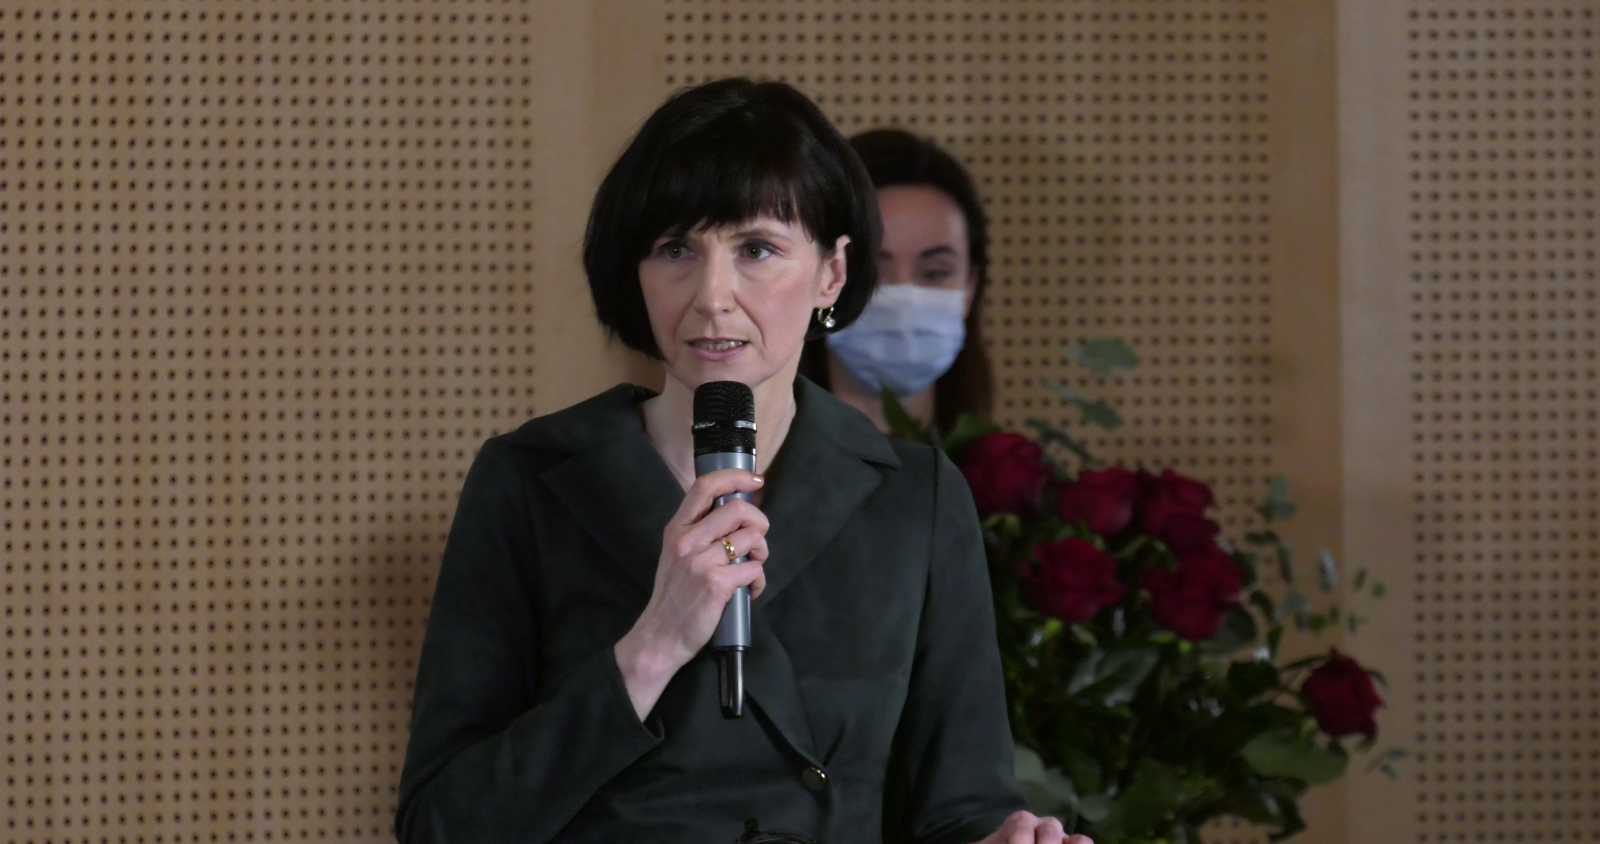 Prof. Elżbieta Winiecka przemawia do mikrofonu, za nią stoi dr Sylwia Karolak, w ręku trzyma bukiet czerwonych róż.